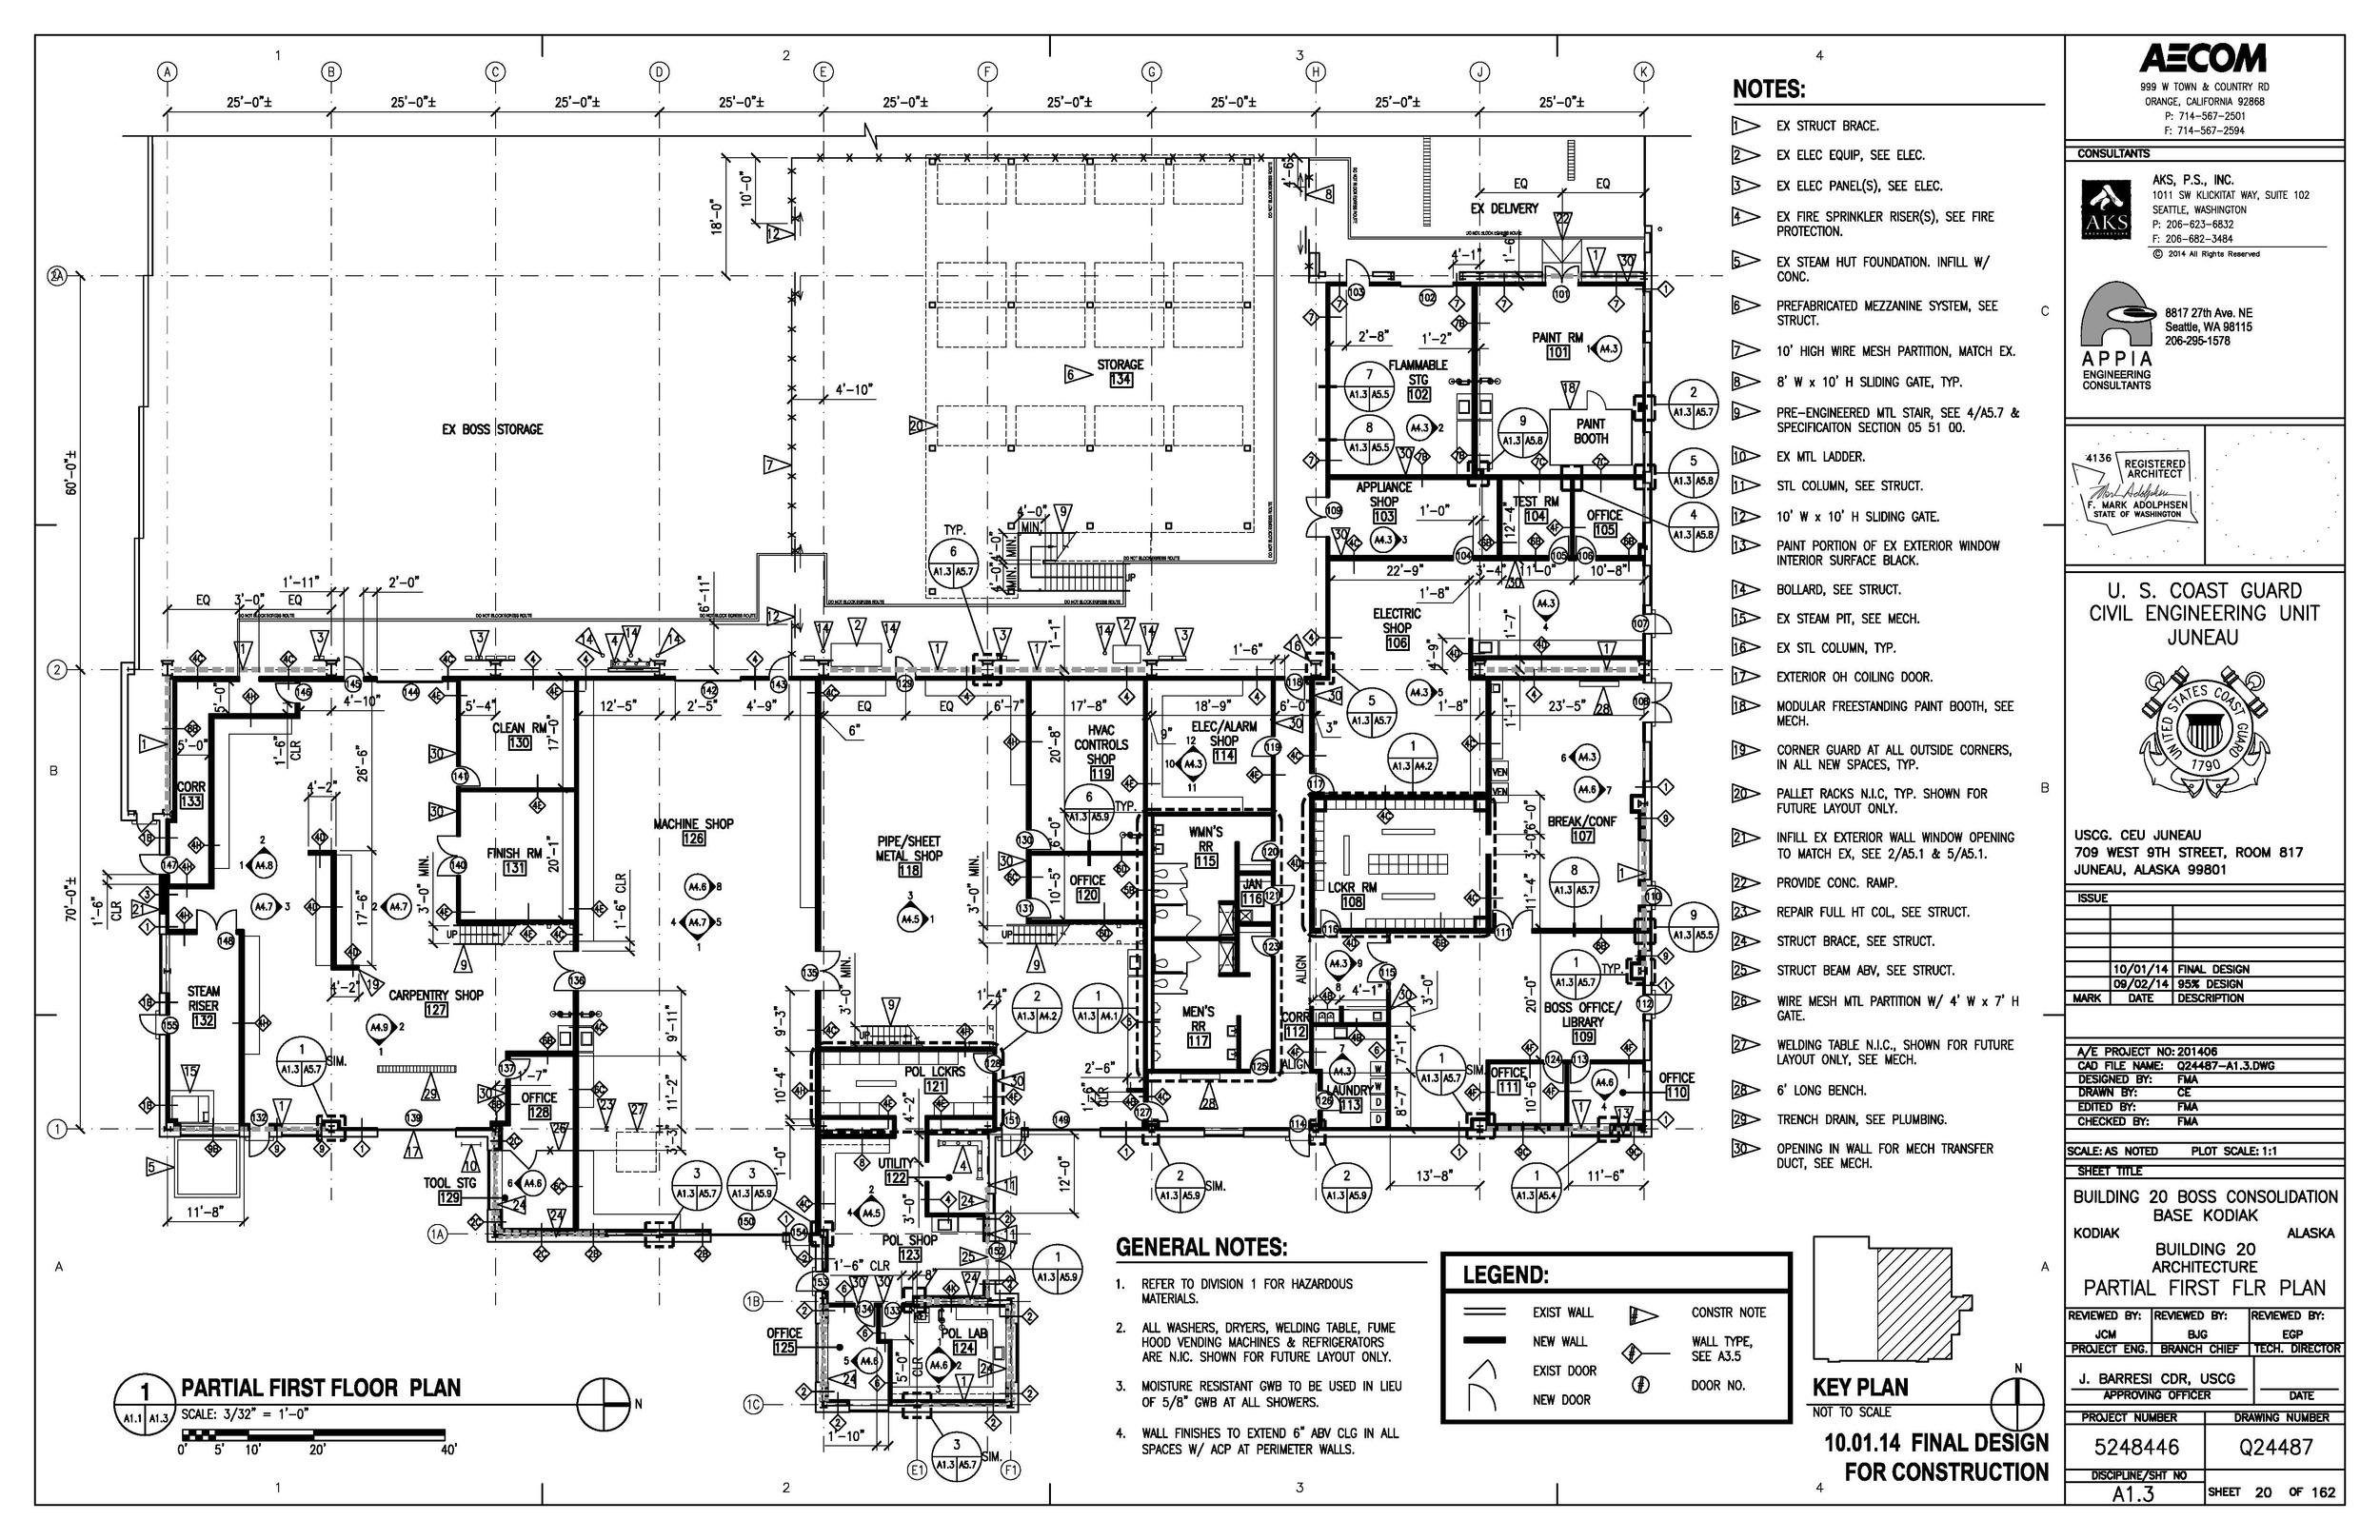 Building 20 new floor plan layout 